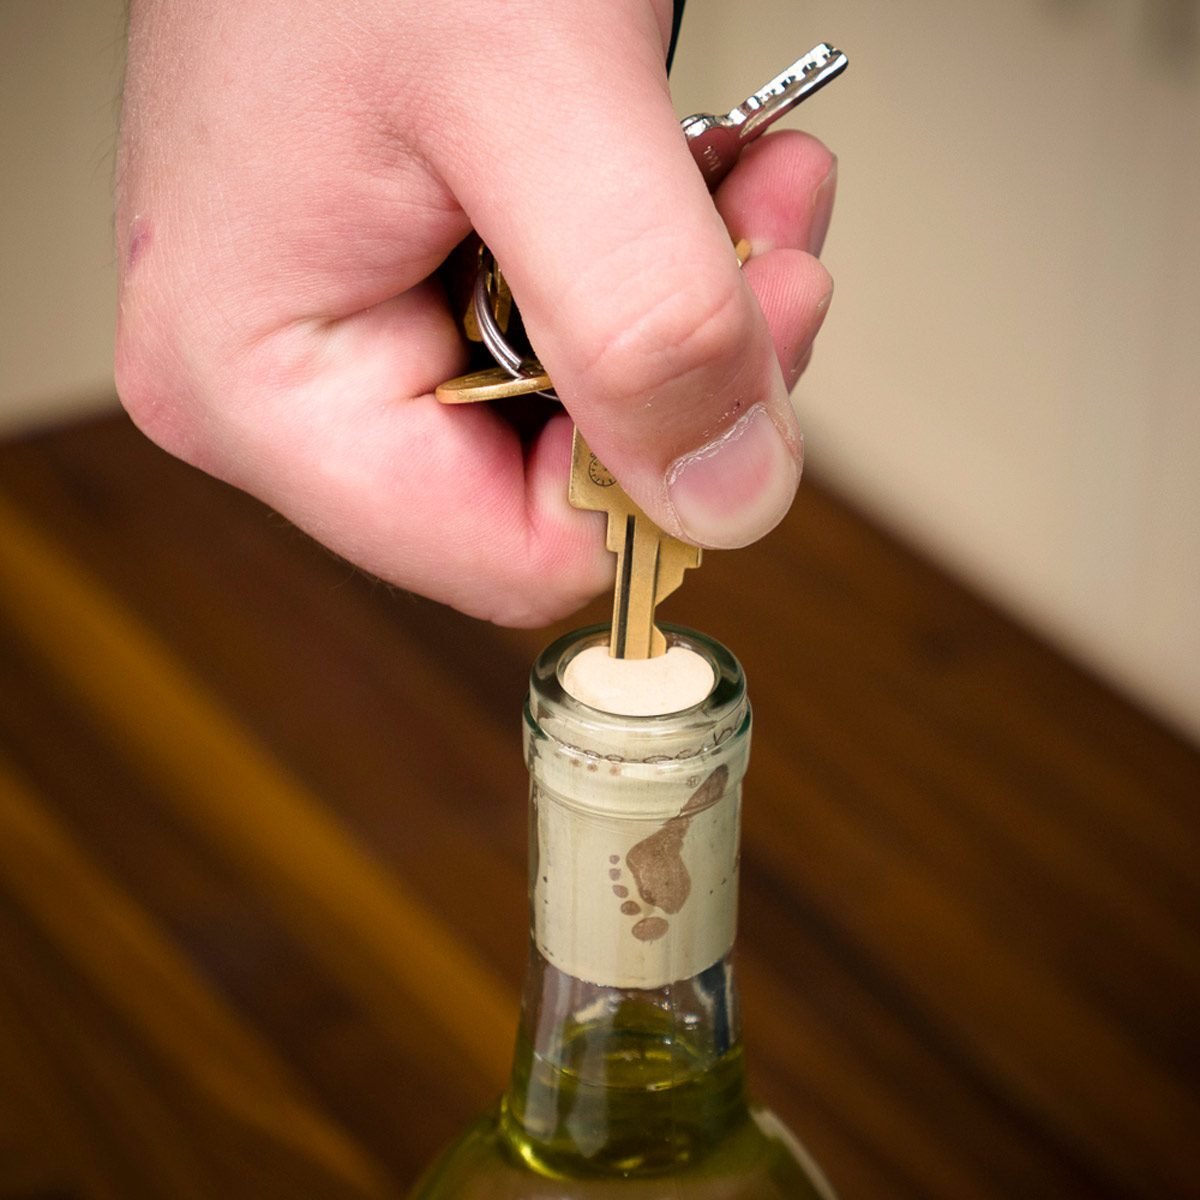 Open Wine Bottle With a Key